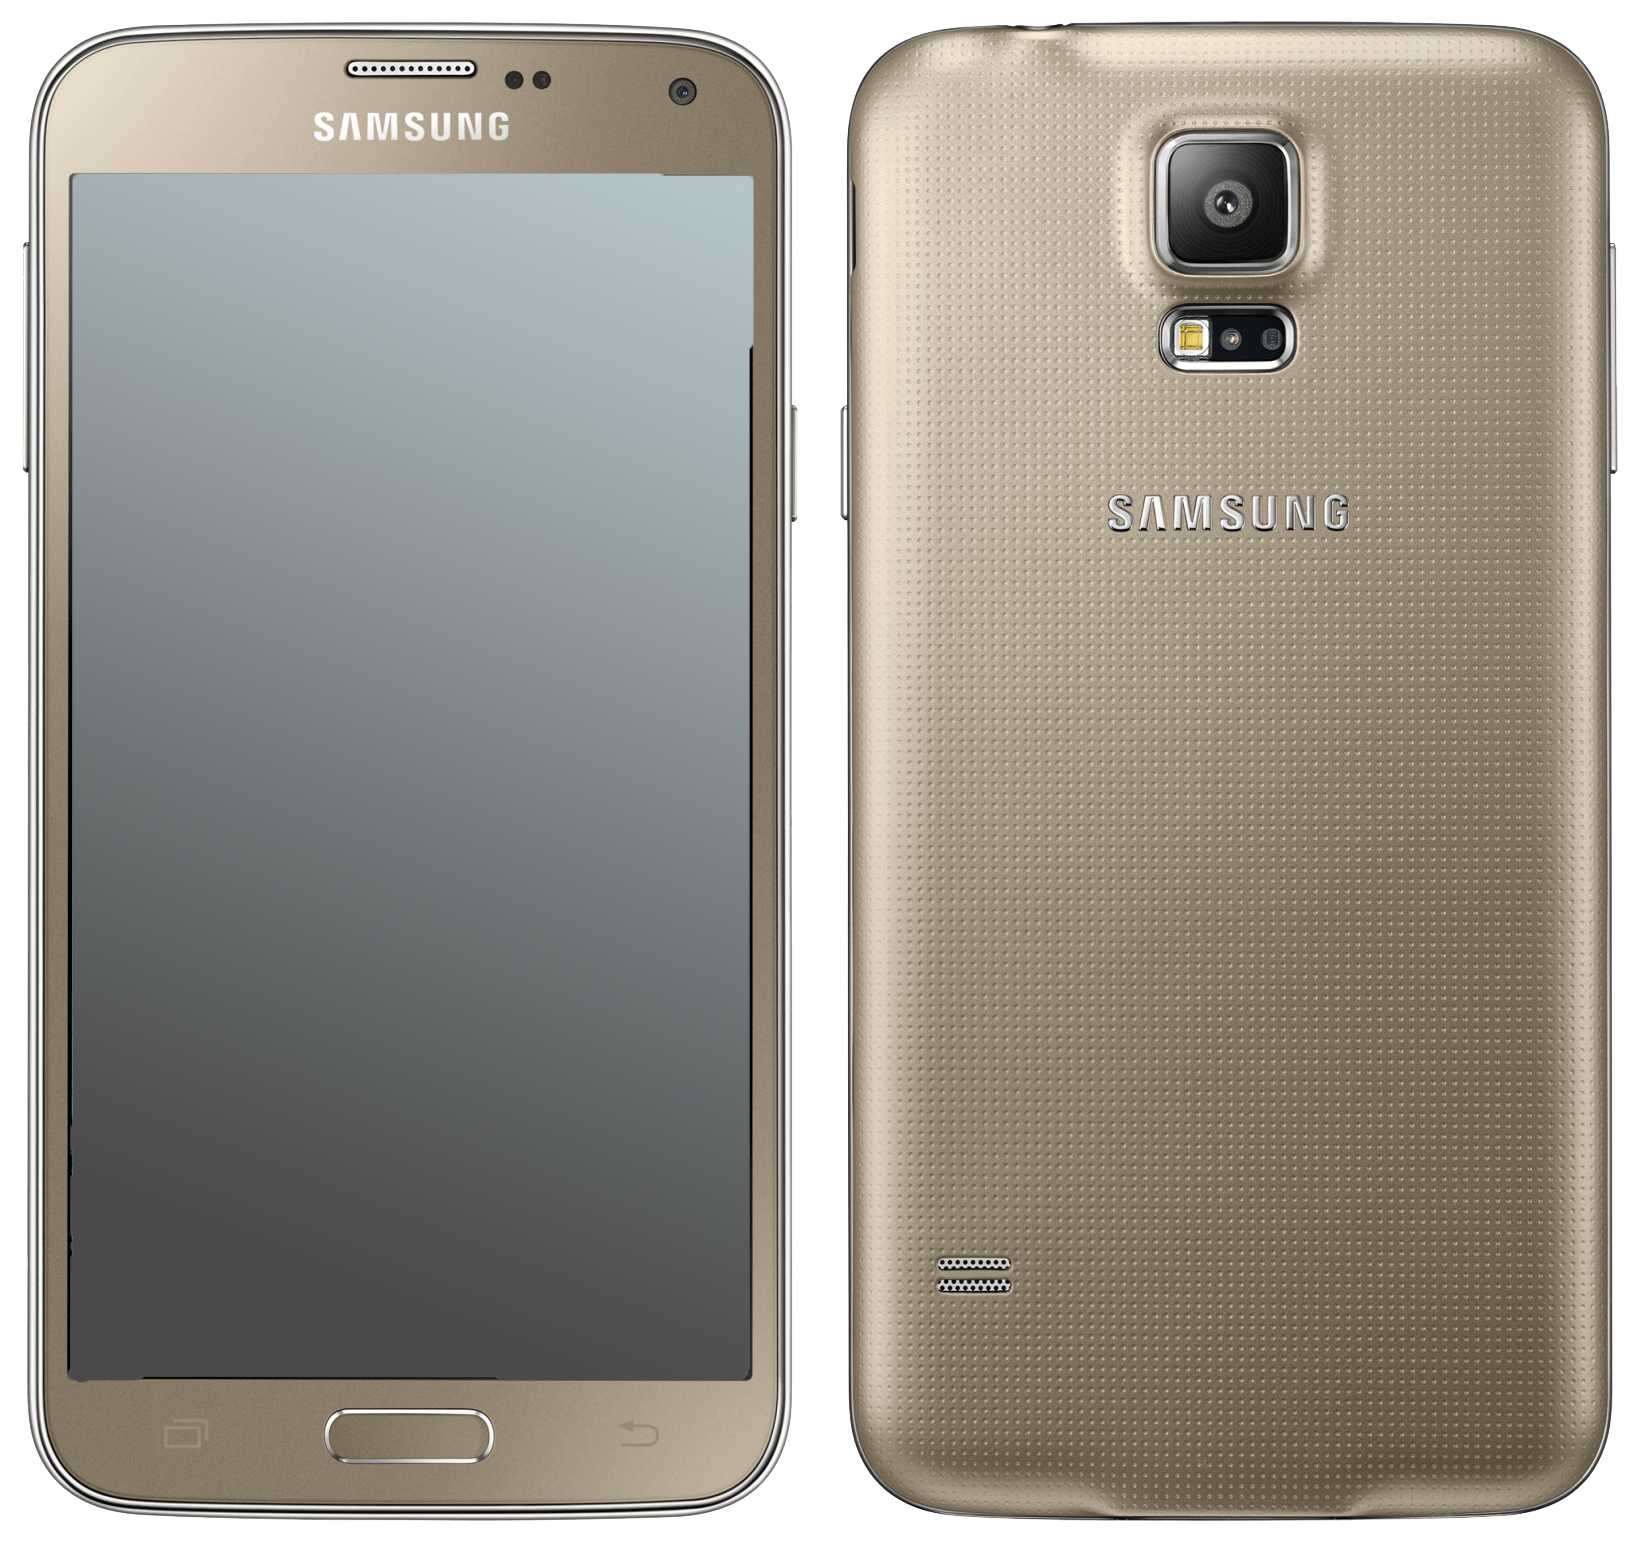 Samsung Galaxy s5 Neo gold - Onhe Vertrag